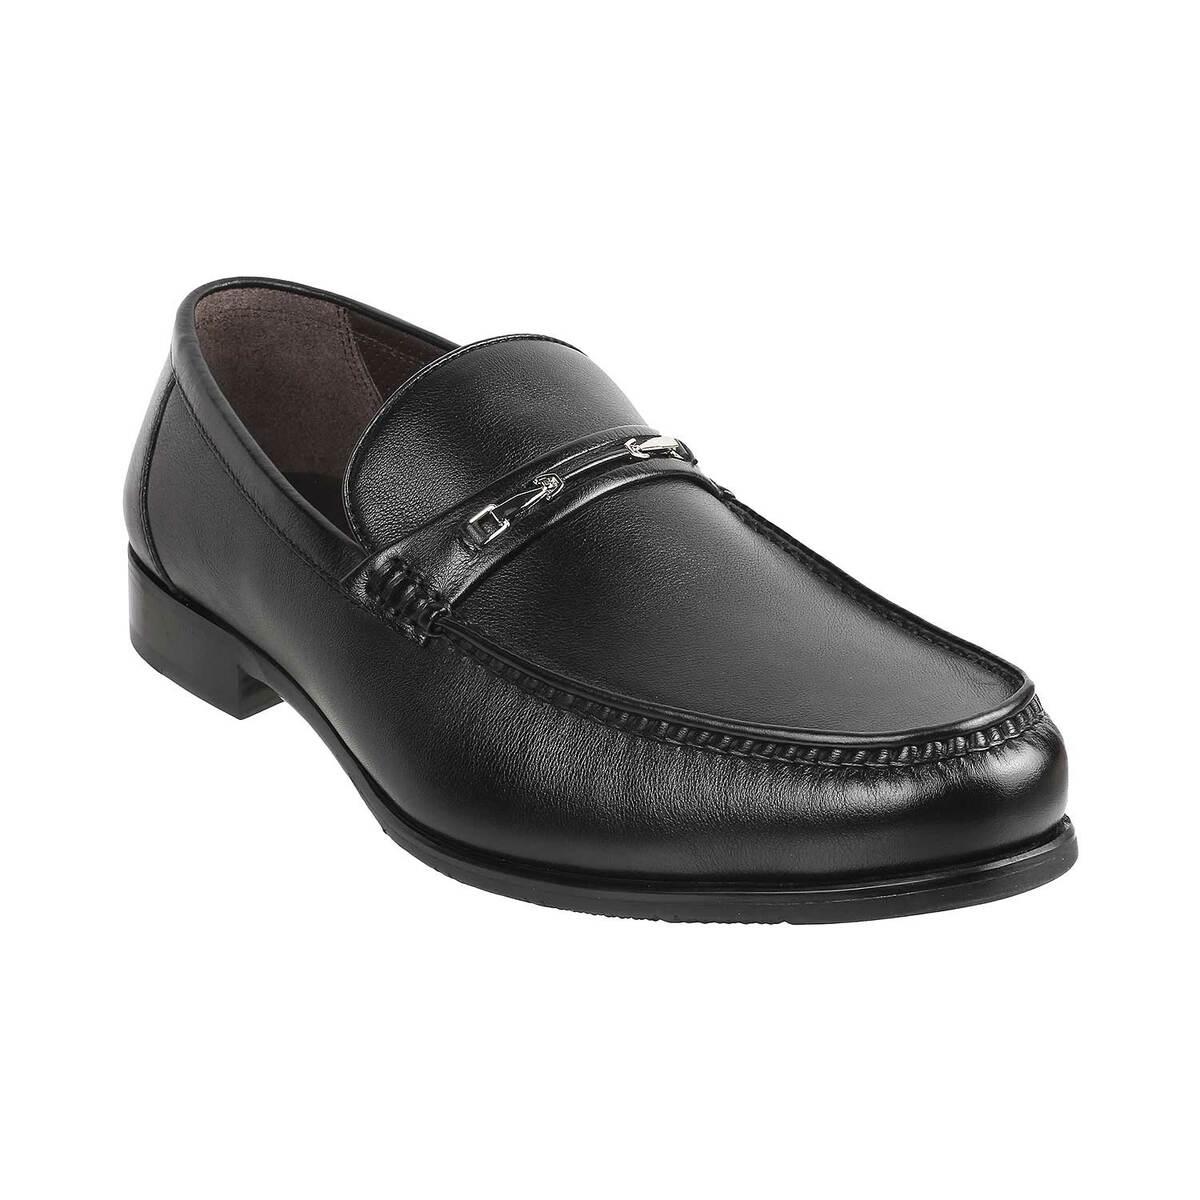 Buy Men Black Formal Moccasin Online | SKU: 14-1397-11-40-Metro Shoes